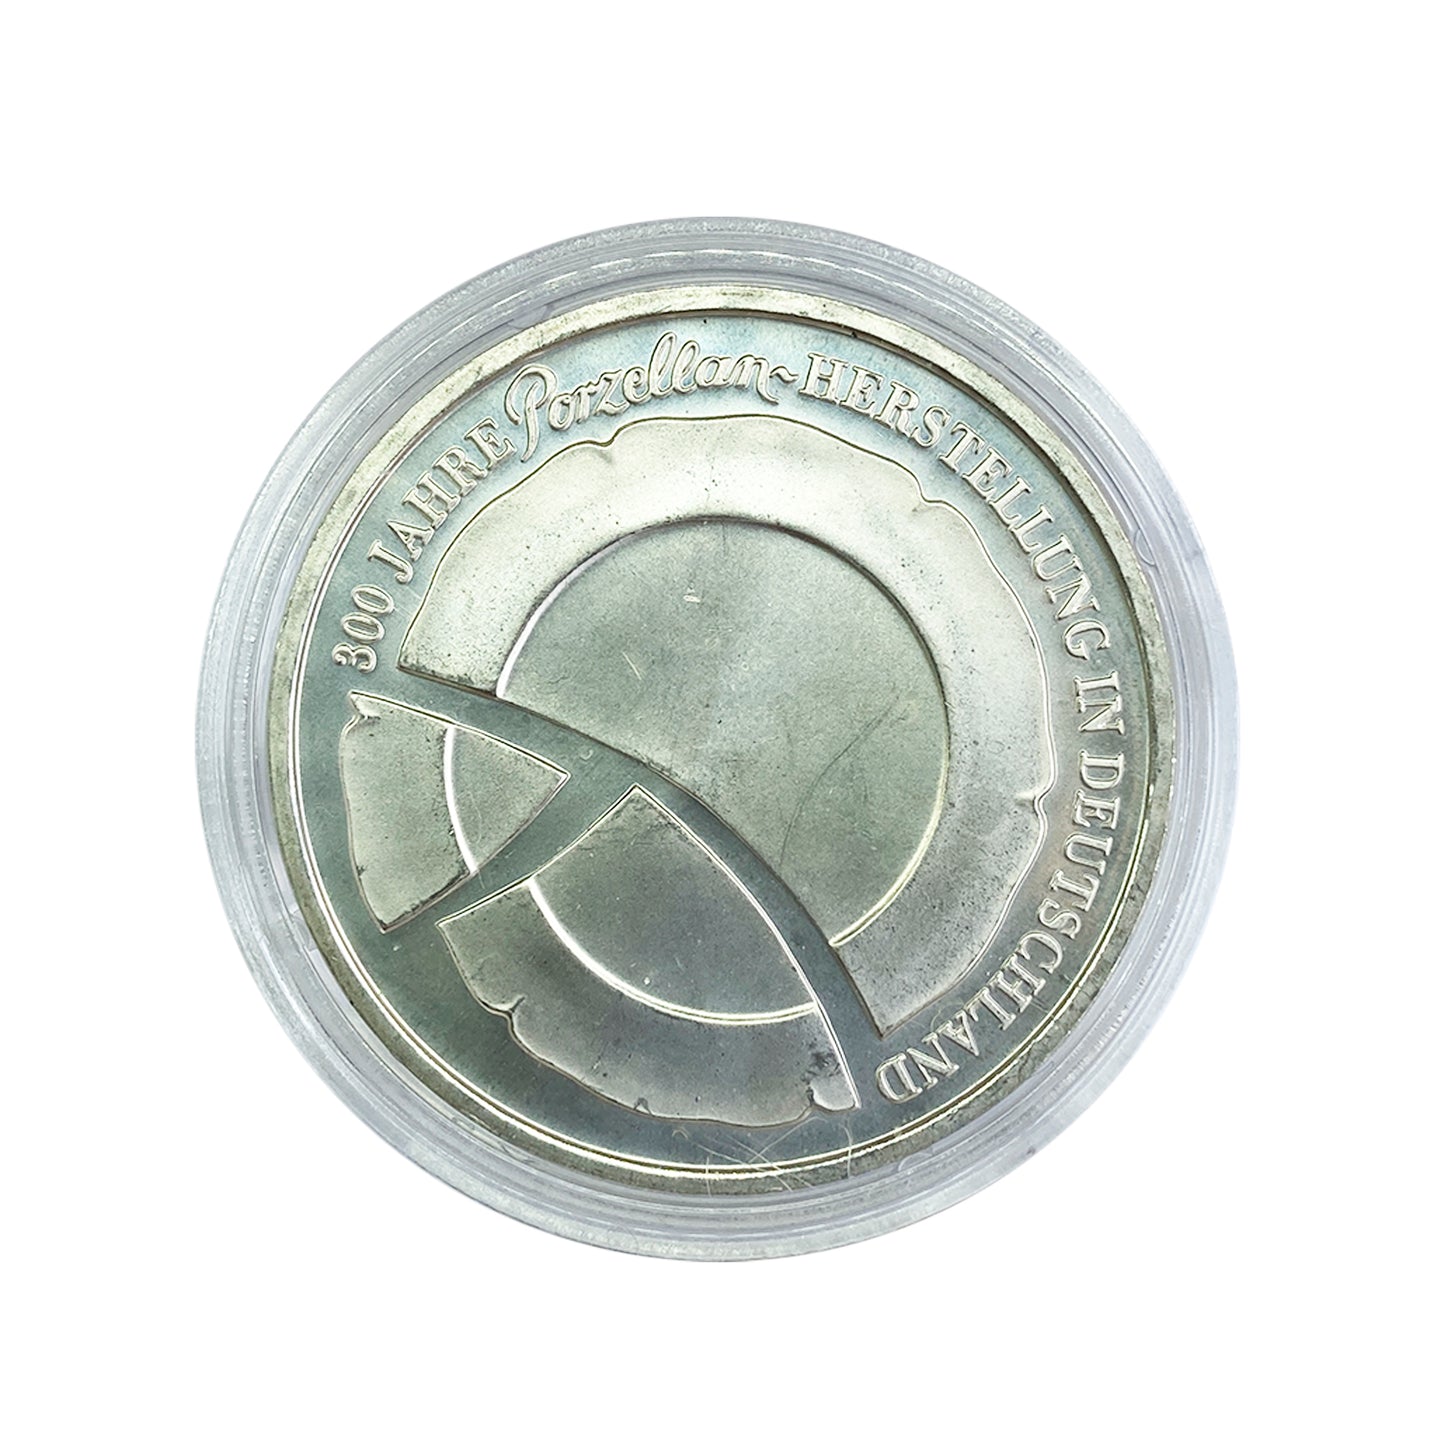 Alemania - Moneda 10 euros plata 2010 - 300 años de producción de porcelana